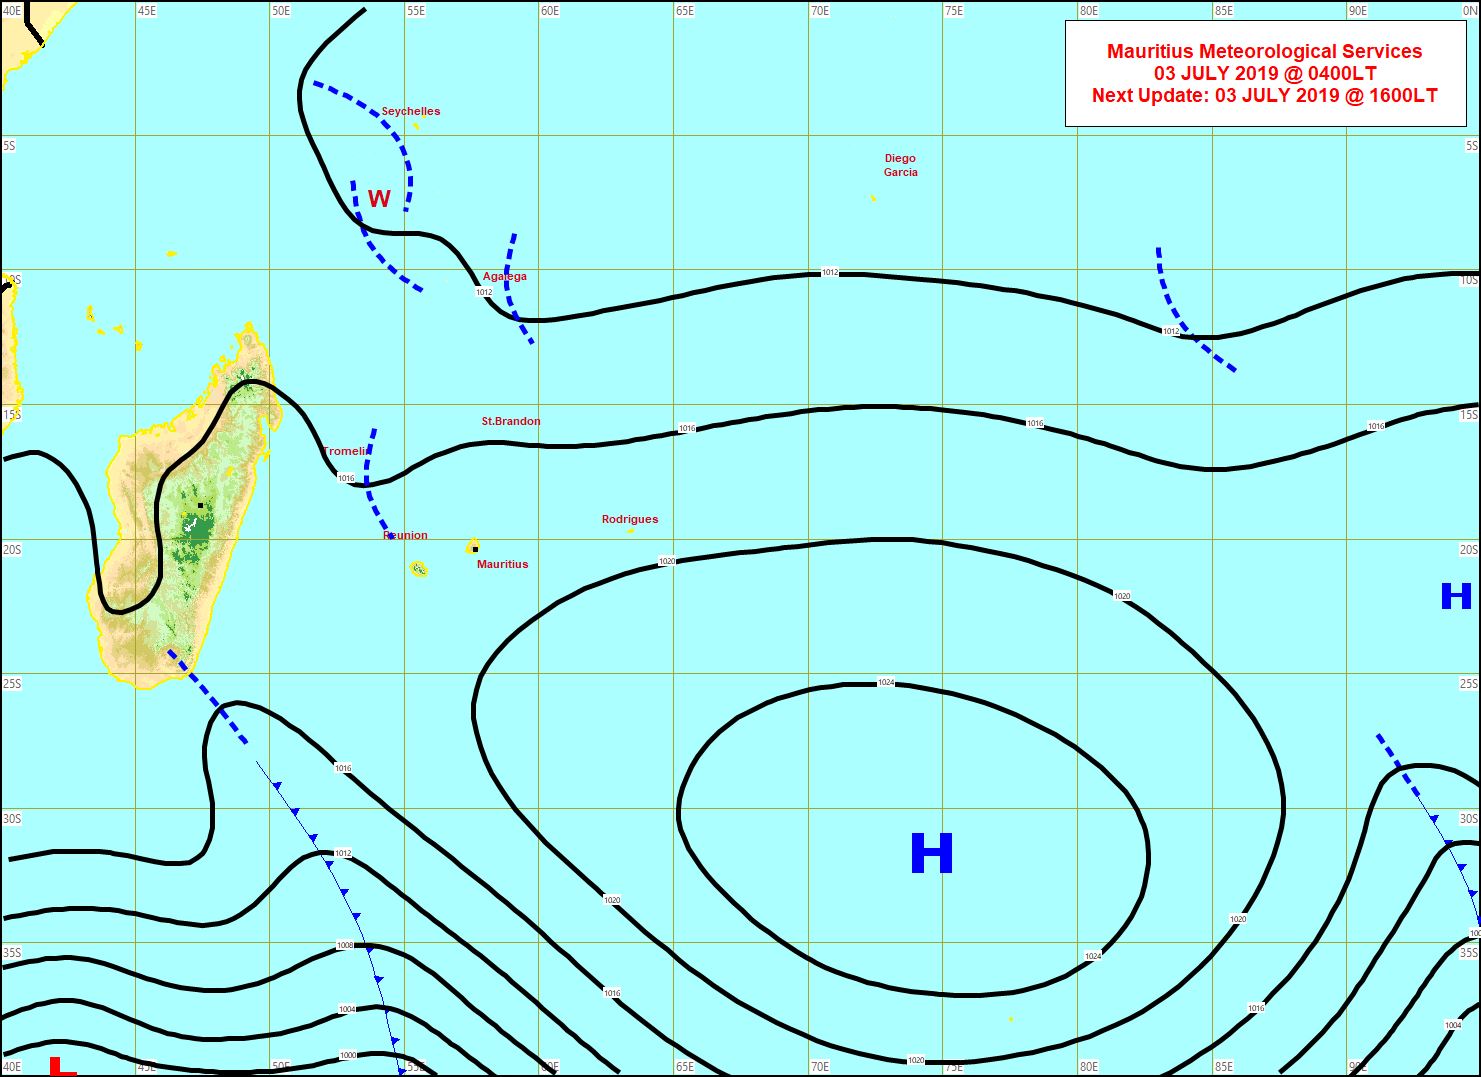 Situation de surface ce matin. L'anticyclone affaibli s'est décalé vers l'Est. Une limite frontale remonte un peu le long des côtes Sud-Est de MADA. Les vents se sont affaiblis sur les Iles Soeurs. Toujours de l'instabilité potentielle près d'Agaléga. MMS